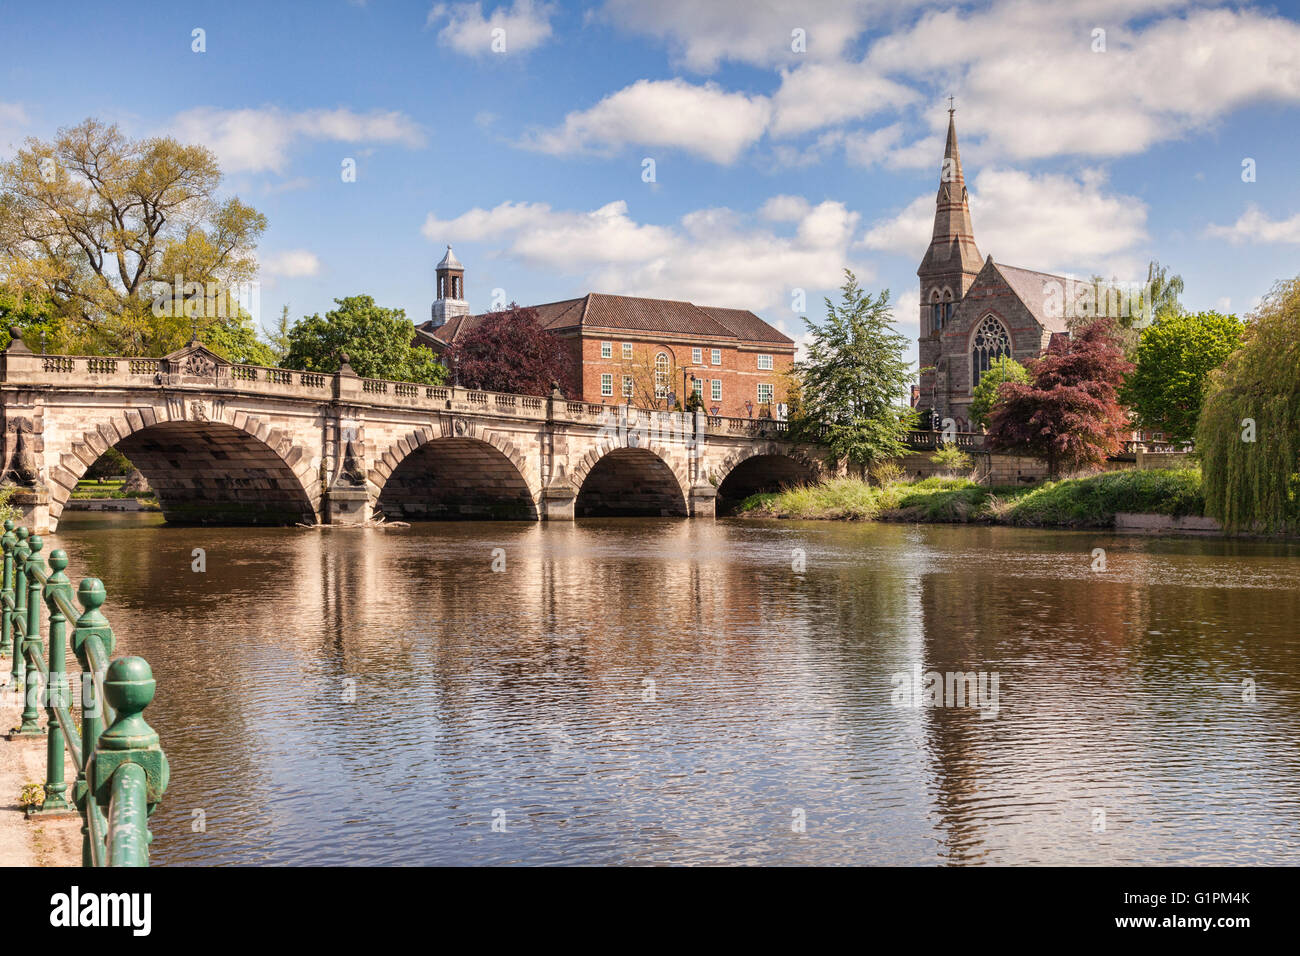 Die Englisch-Brücke über den Fluss Severn, Shrewsbury, Shropshire, England, Vereinigtes Königreich Stockfoto